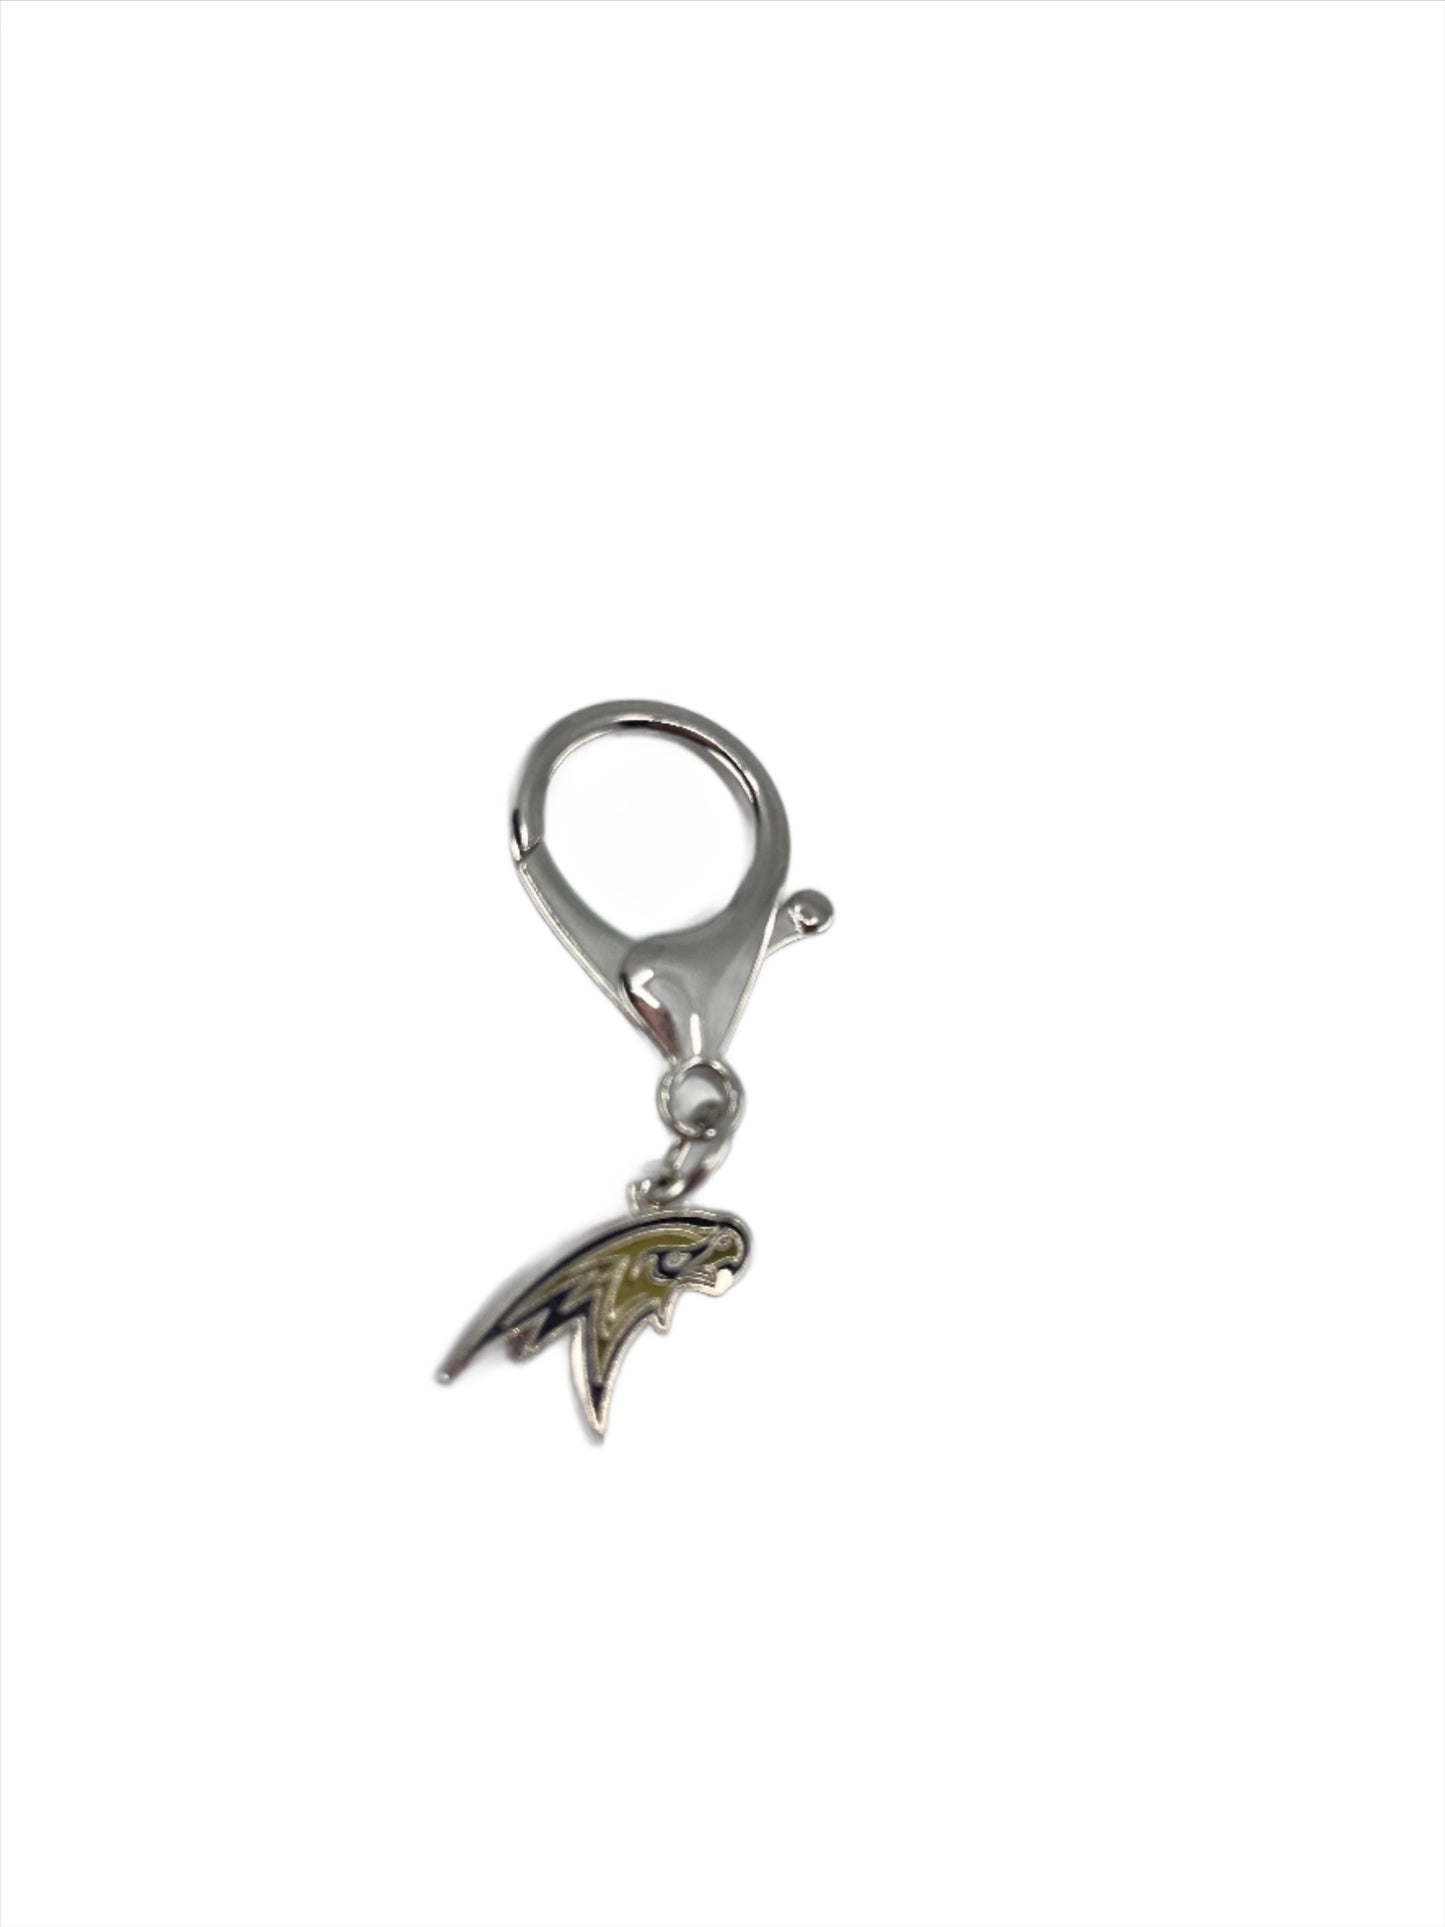 Corning Hawks Logo Keychain or Bag Tag